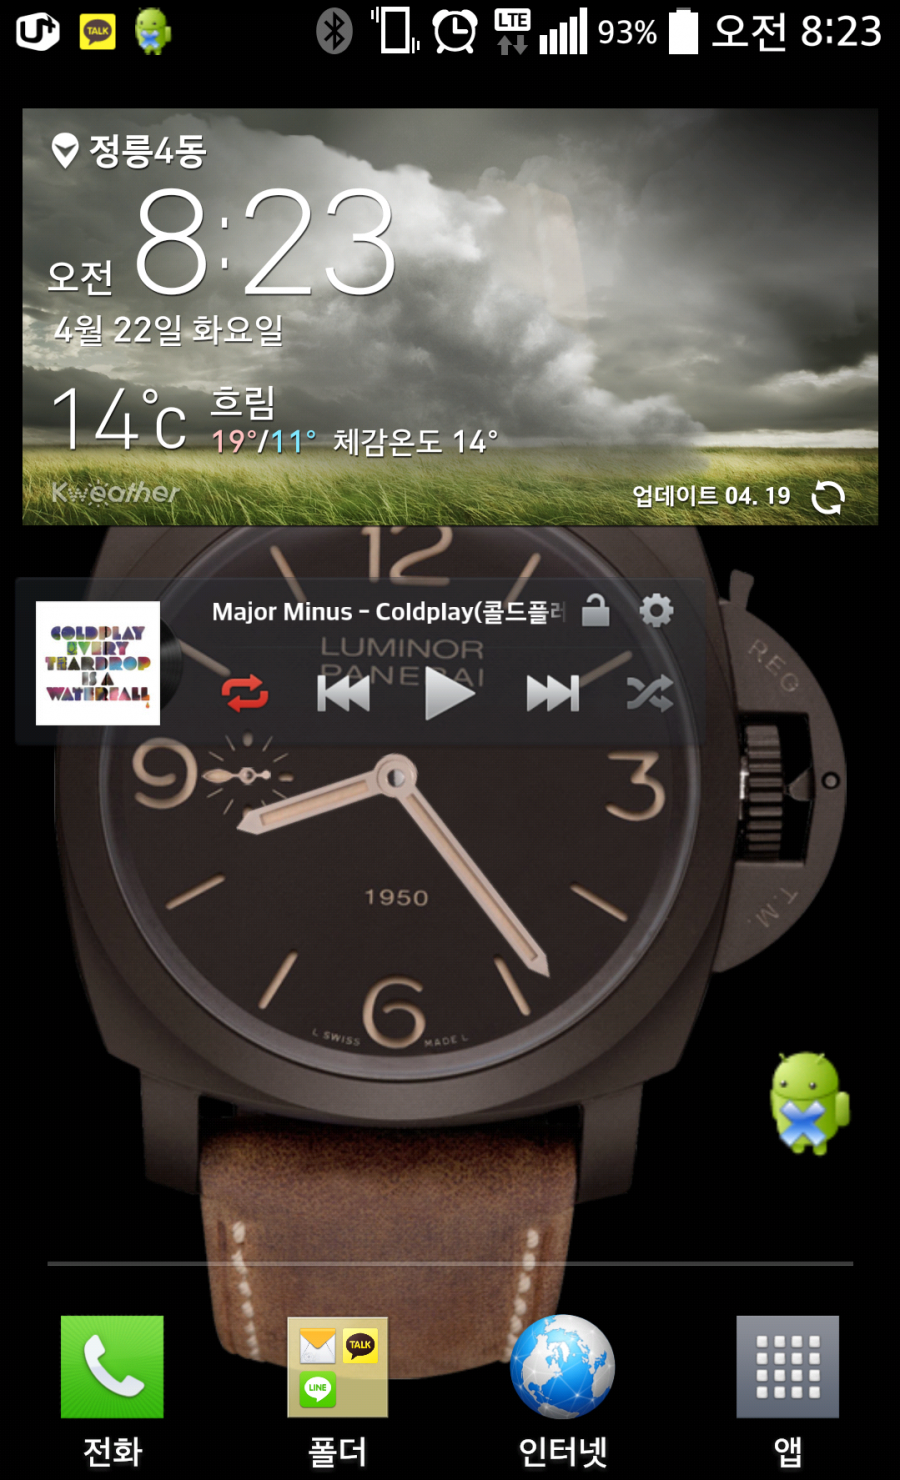 2014-04-22-08-23-53.png : swiss watch 라는 어플을 아시나요??